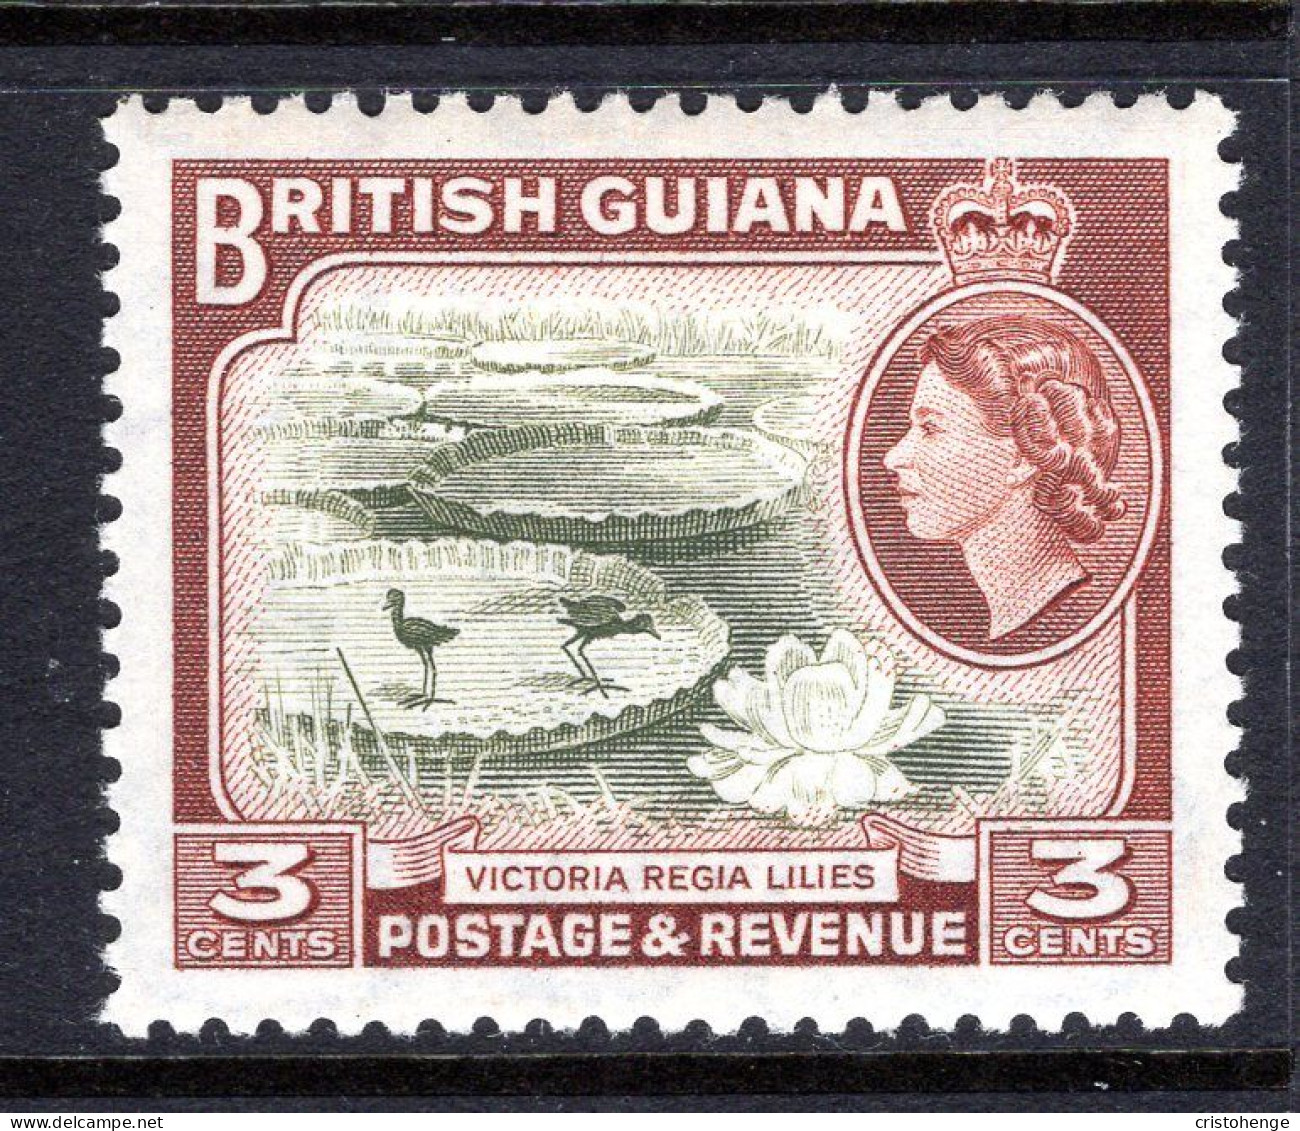 British Guiana 1954-63 QEII Pictorials - 3c Water Lilies HM (SG 333) - Britisch-Guayana (...-1966)